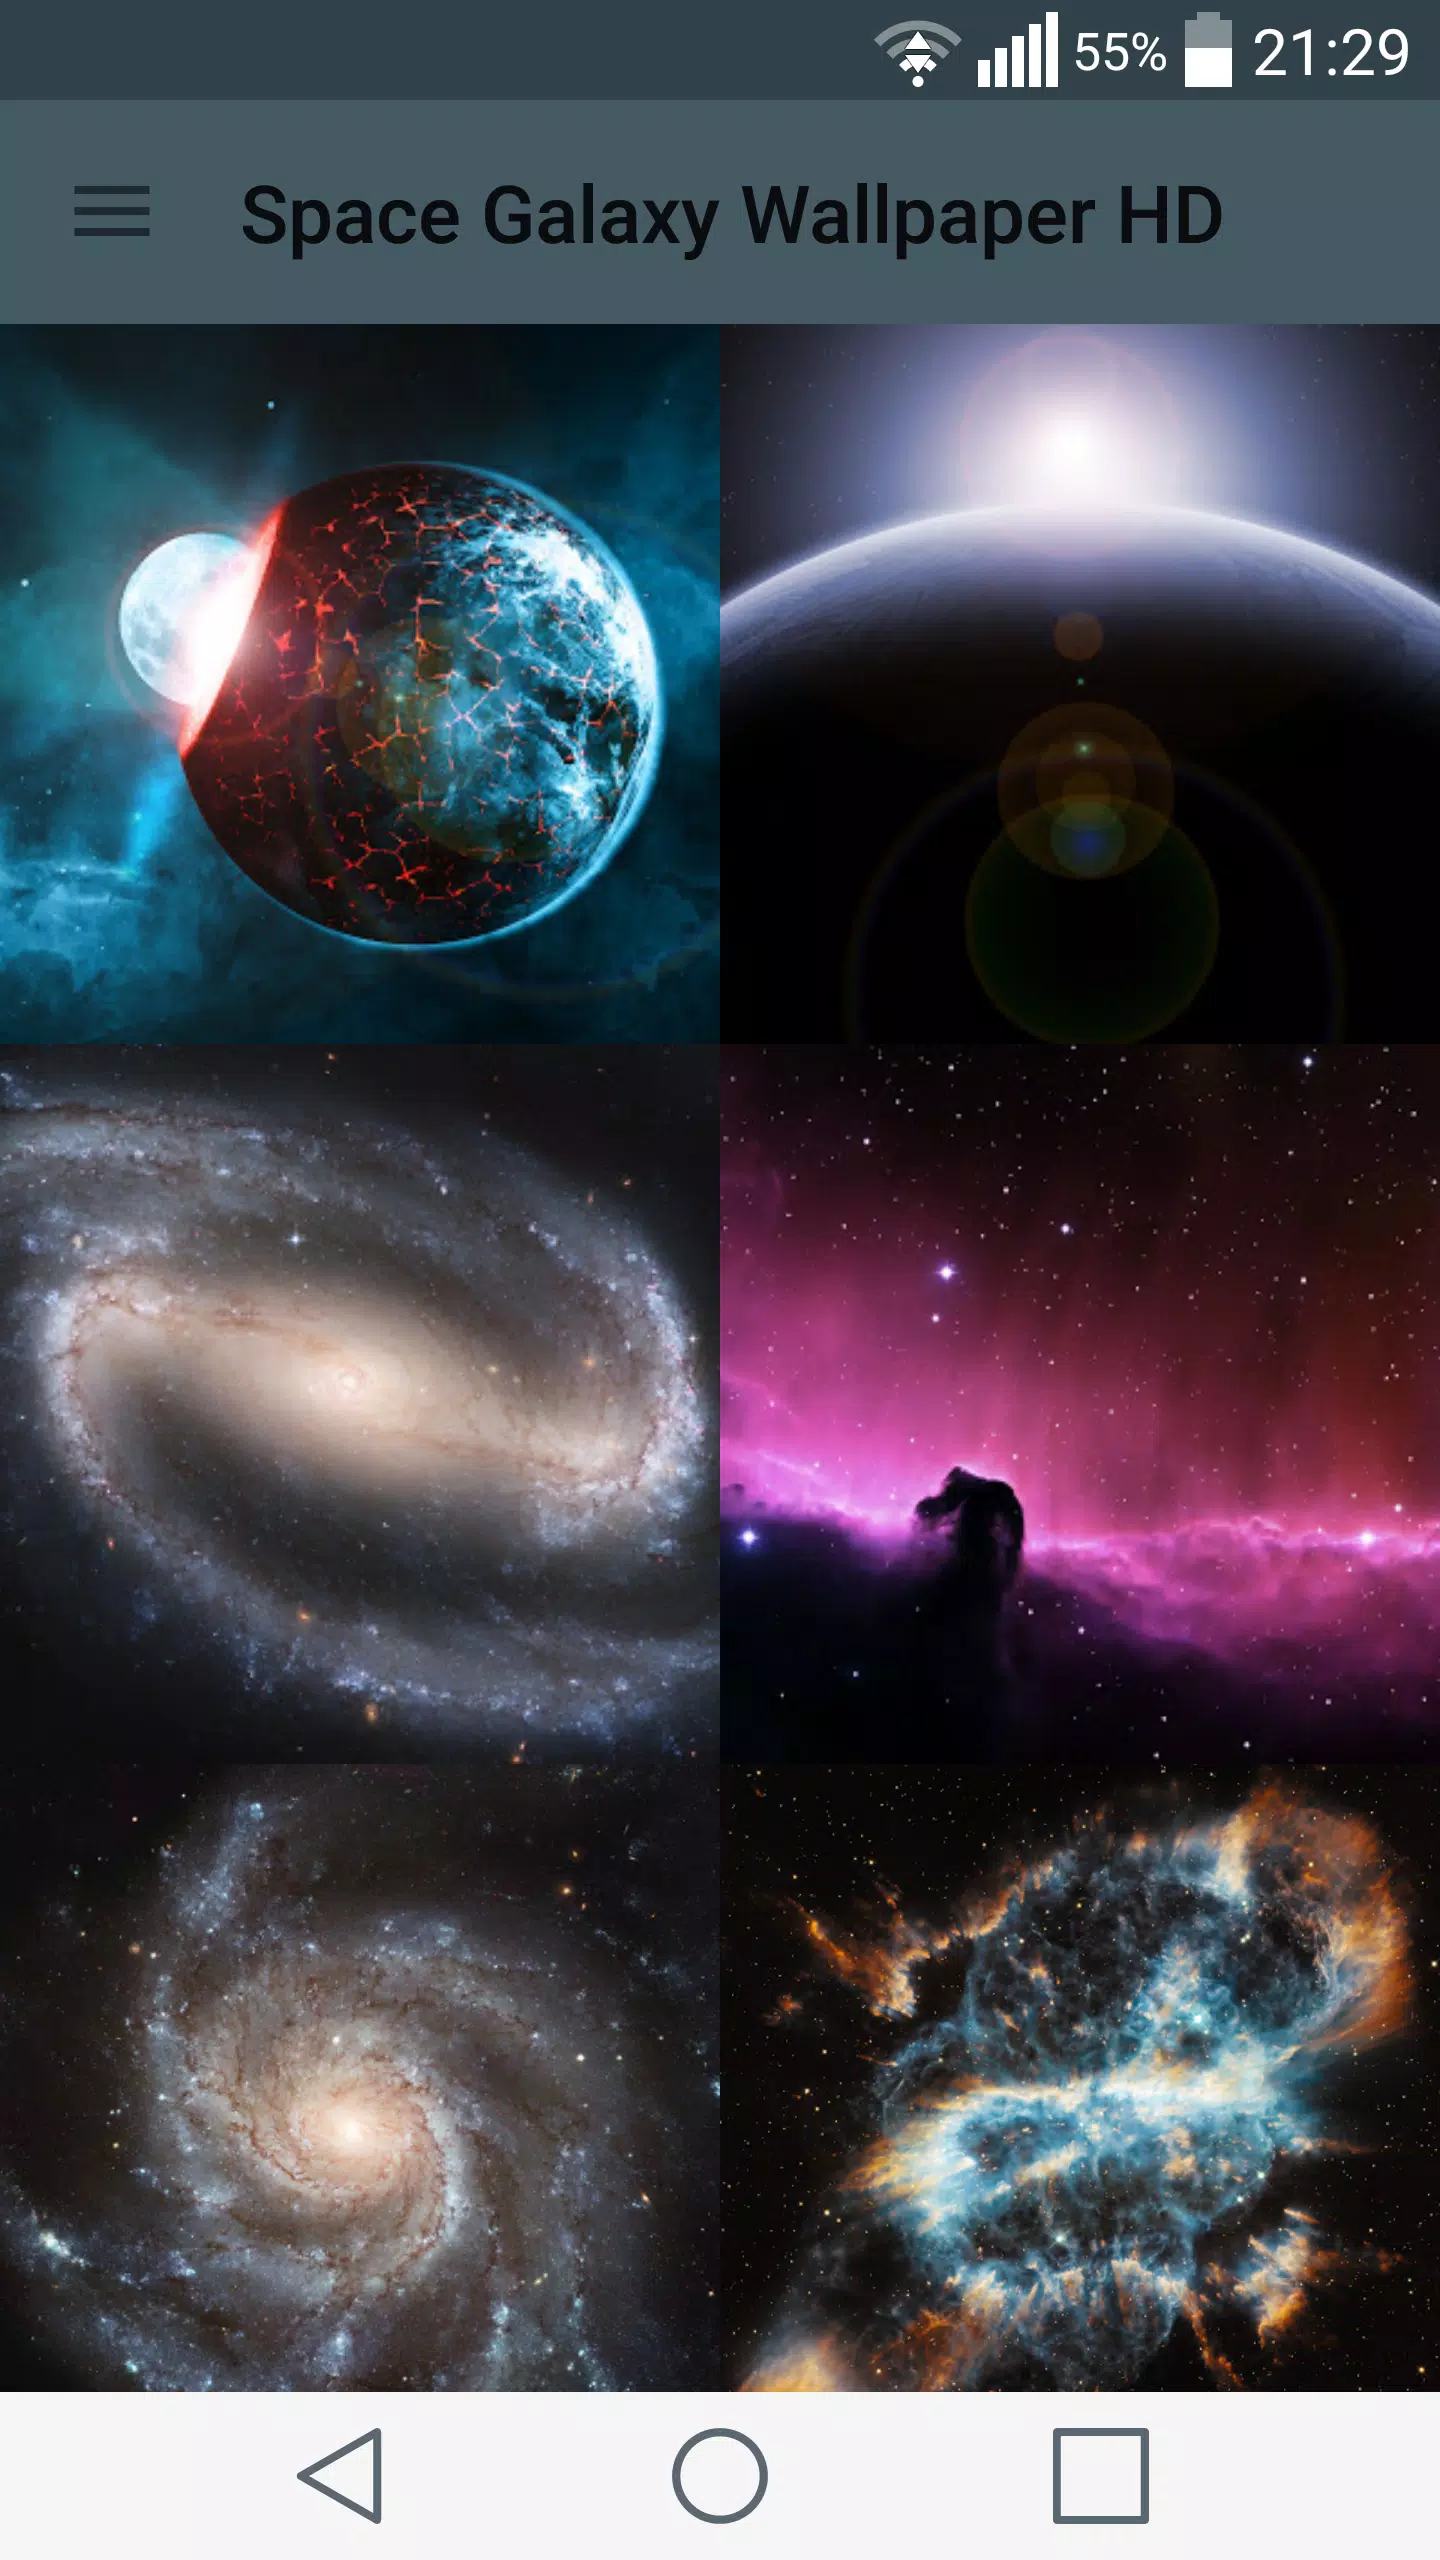 Bạn là một fan của các bộ phim viễn tưởng về thiên hà? Vậy thì Space Galaxy Wallpaper HD là điều bạn đang tìm kiếm. Nhấn vào hình ảnh để tải nó ngay bây giờ và trải nghiệm những hình ảnh đẹp nhất của các thiên hà đang chờ bạn.